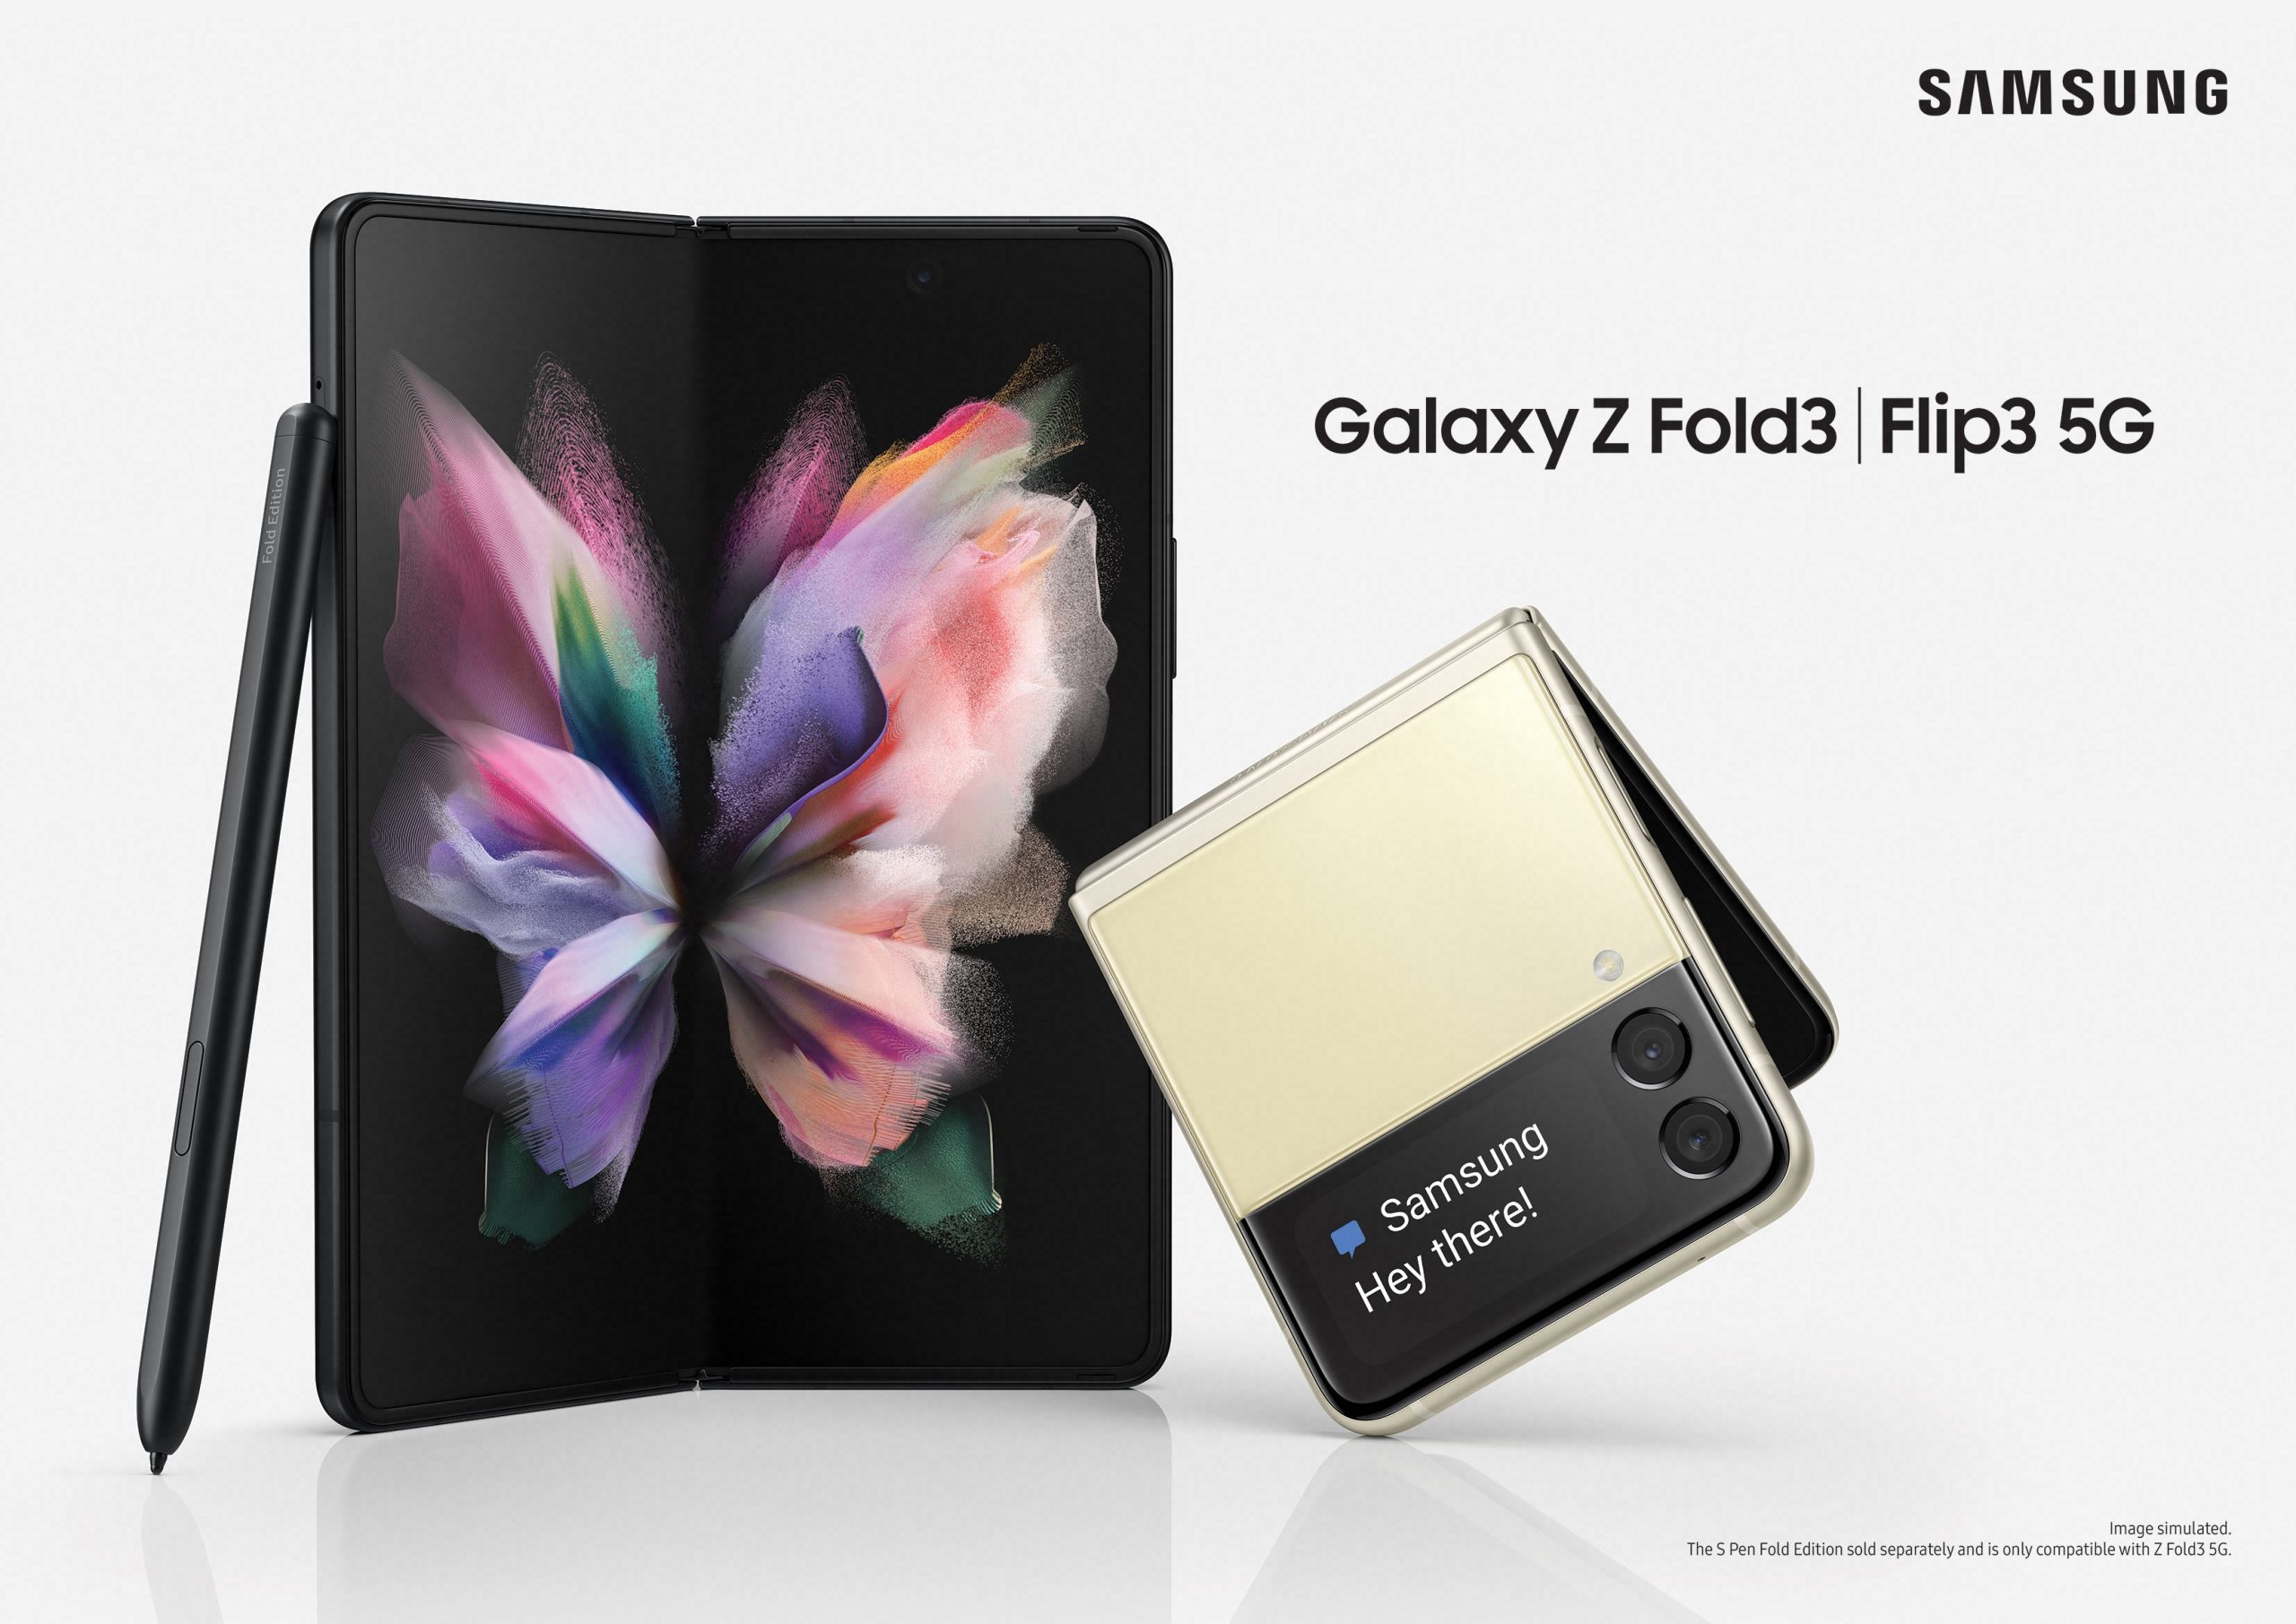 Samsung Galaxy Z Fold 3 med kamera under kameran och Z Flip 3 med förbättrad design och specifikationer blir officiella